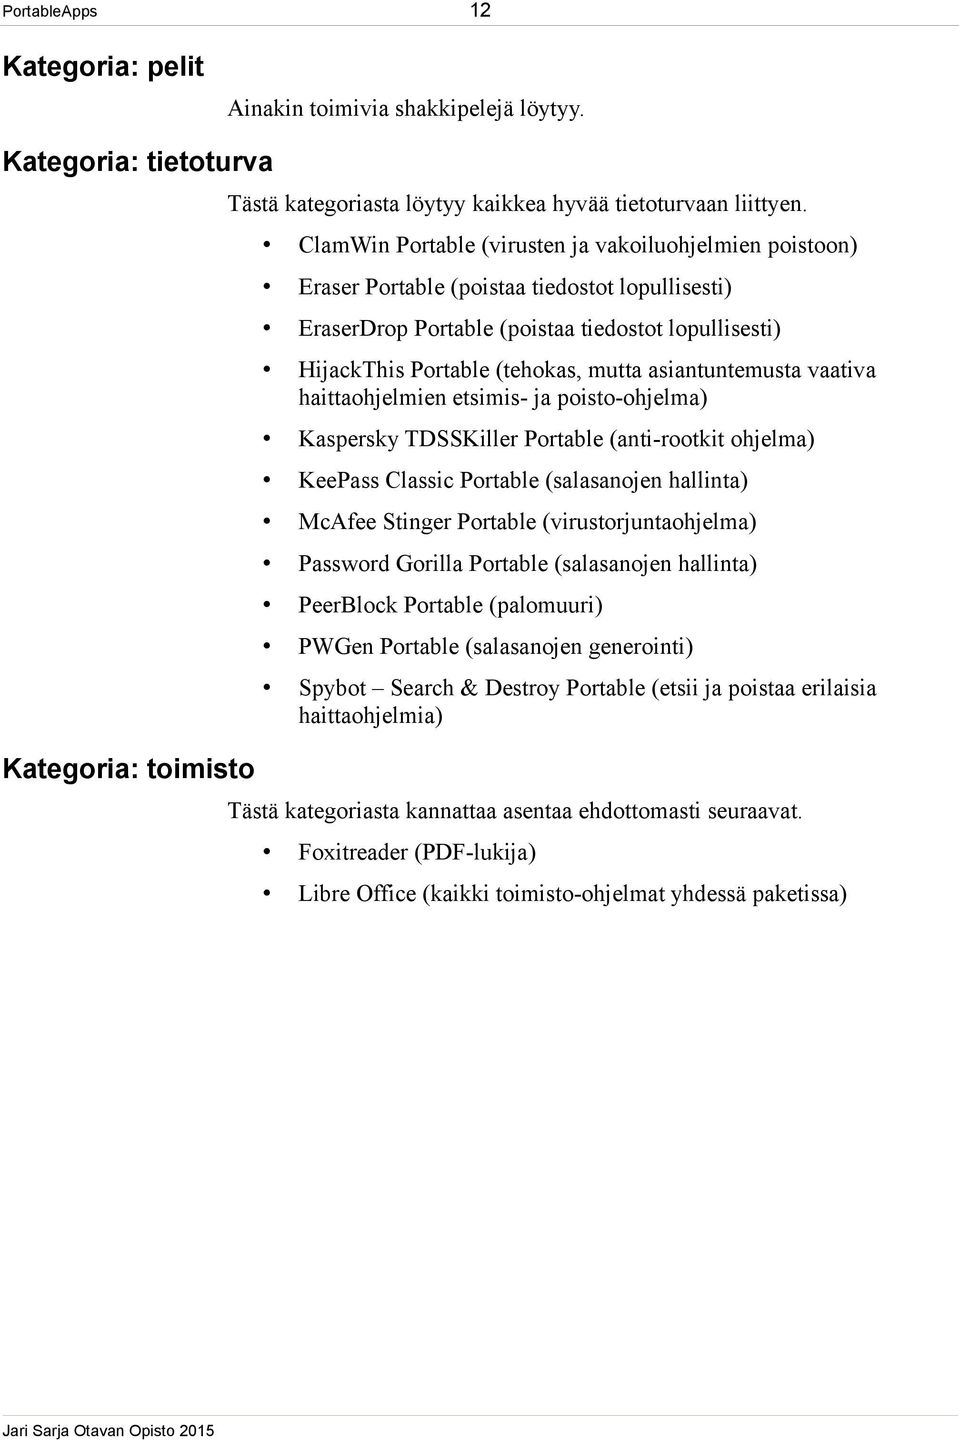 asiantuntemusta vaativa haittaohjelmien etsimis- ja poisto-ohjelma) Kaspersky TDSSKiller Portable (anti-rootkit ohjelma) KeePass Classic Portable (salasanojen hallinta) McAfee Stinger Portable